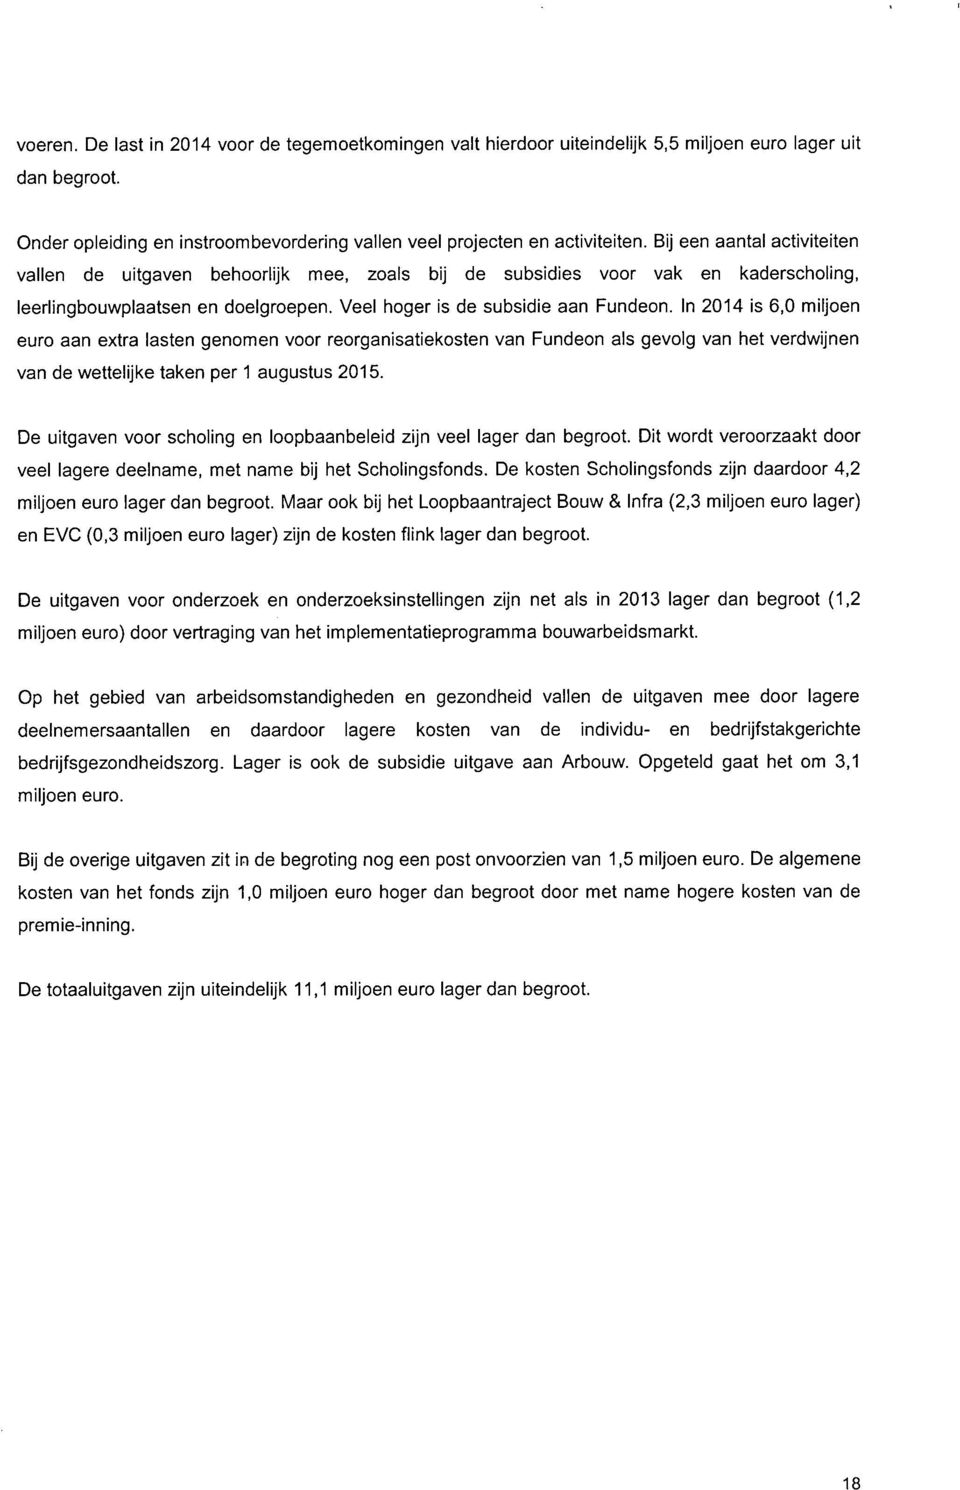 In 2014 is 6,0 miljoen euro aan extra lasten genomen voor reorganisatiekosten van Fundeon als gevolg van het verdwijnen van de wettelijke taken per 1 augustus 2015.